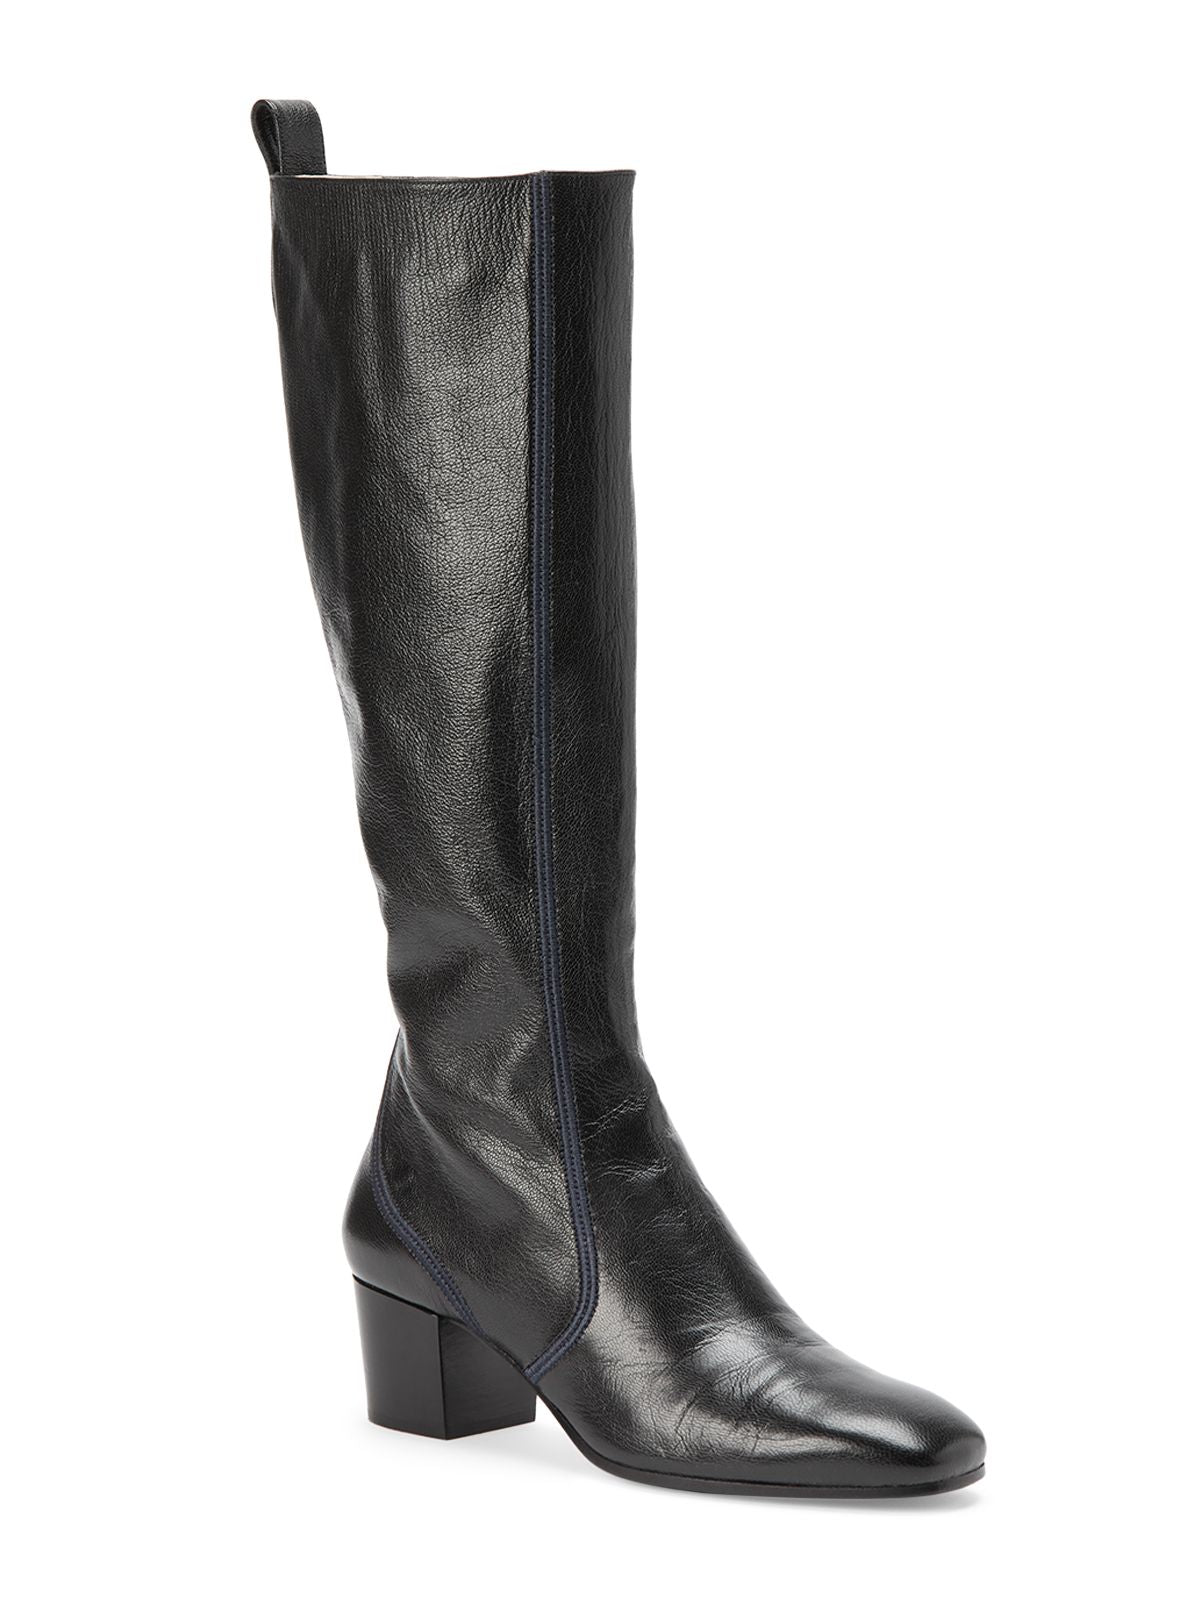 CHLOE Womens Black Goring Comfort Goldee Round Toe Block Heel Zip-Up Leather Heeled Boots 36.5